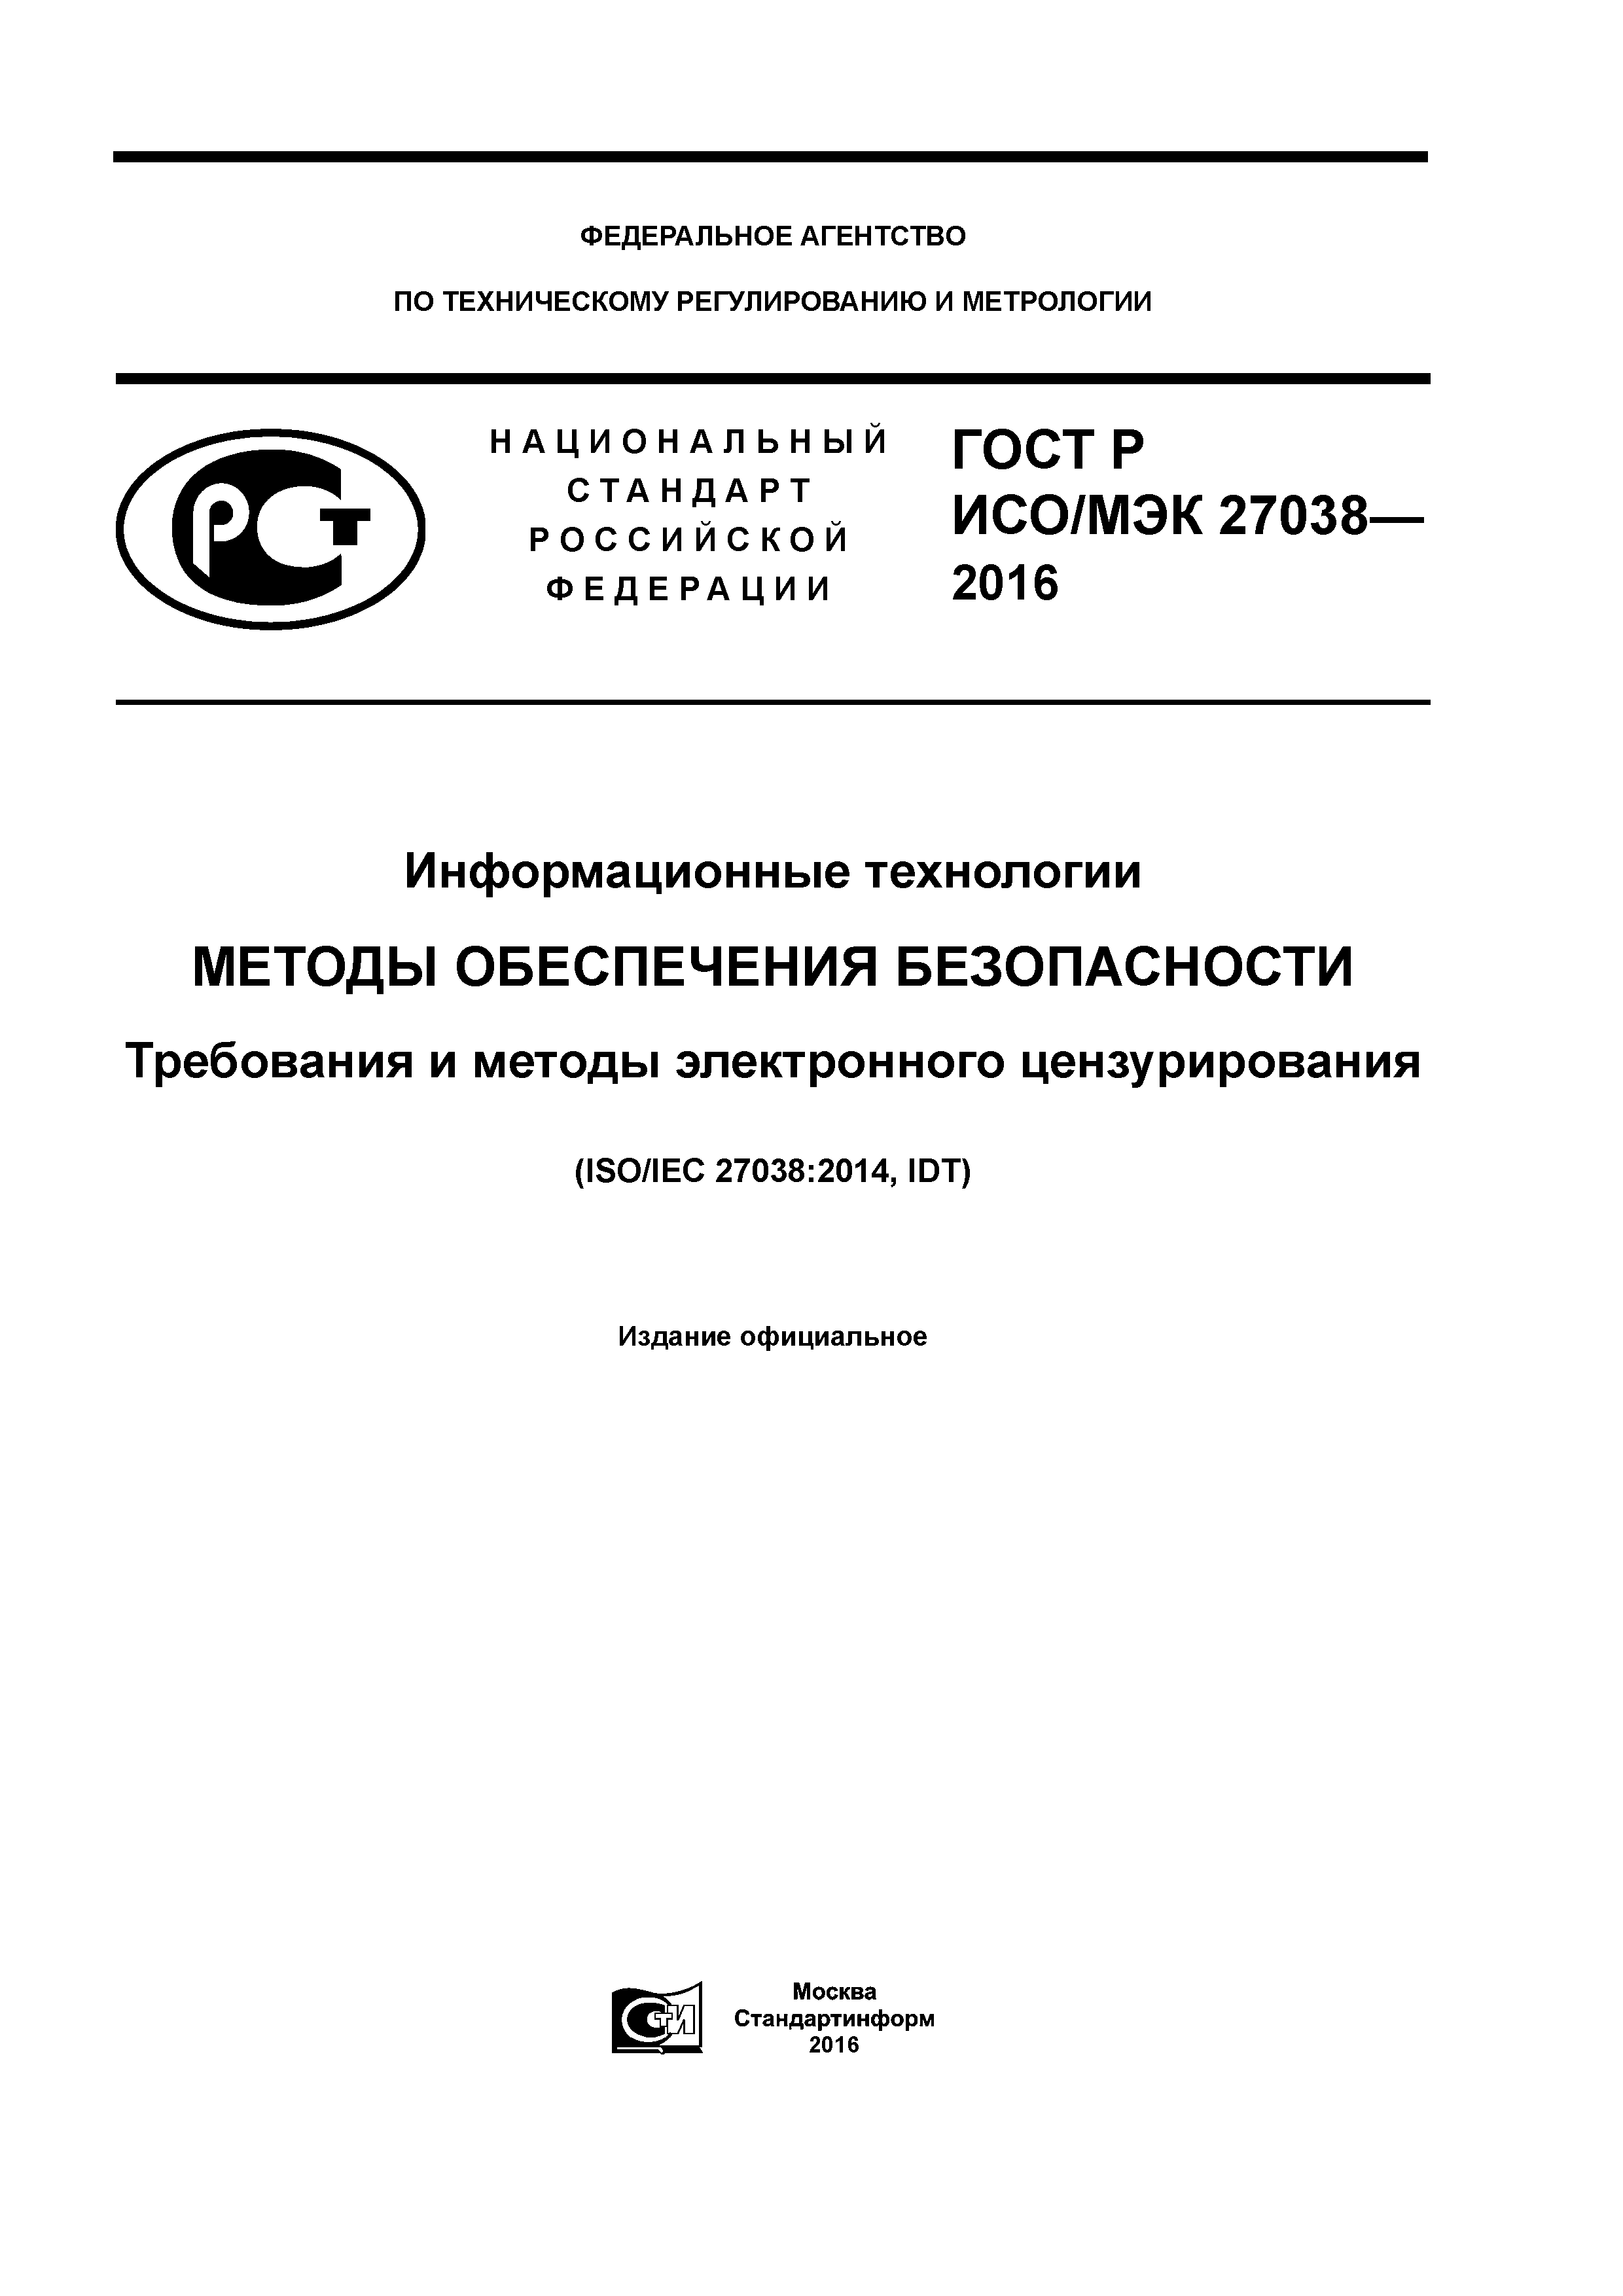 ГОСТ Р ИСО/МЭК 27038-2016